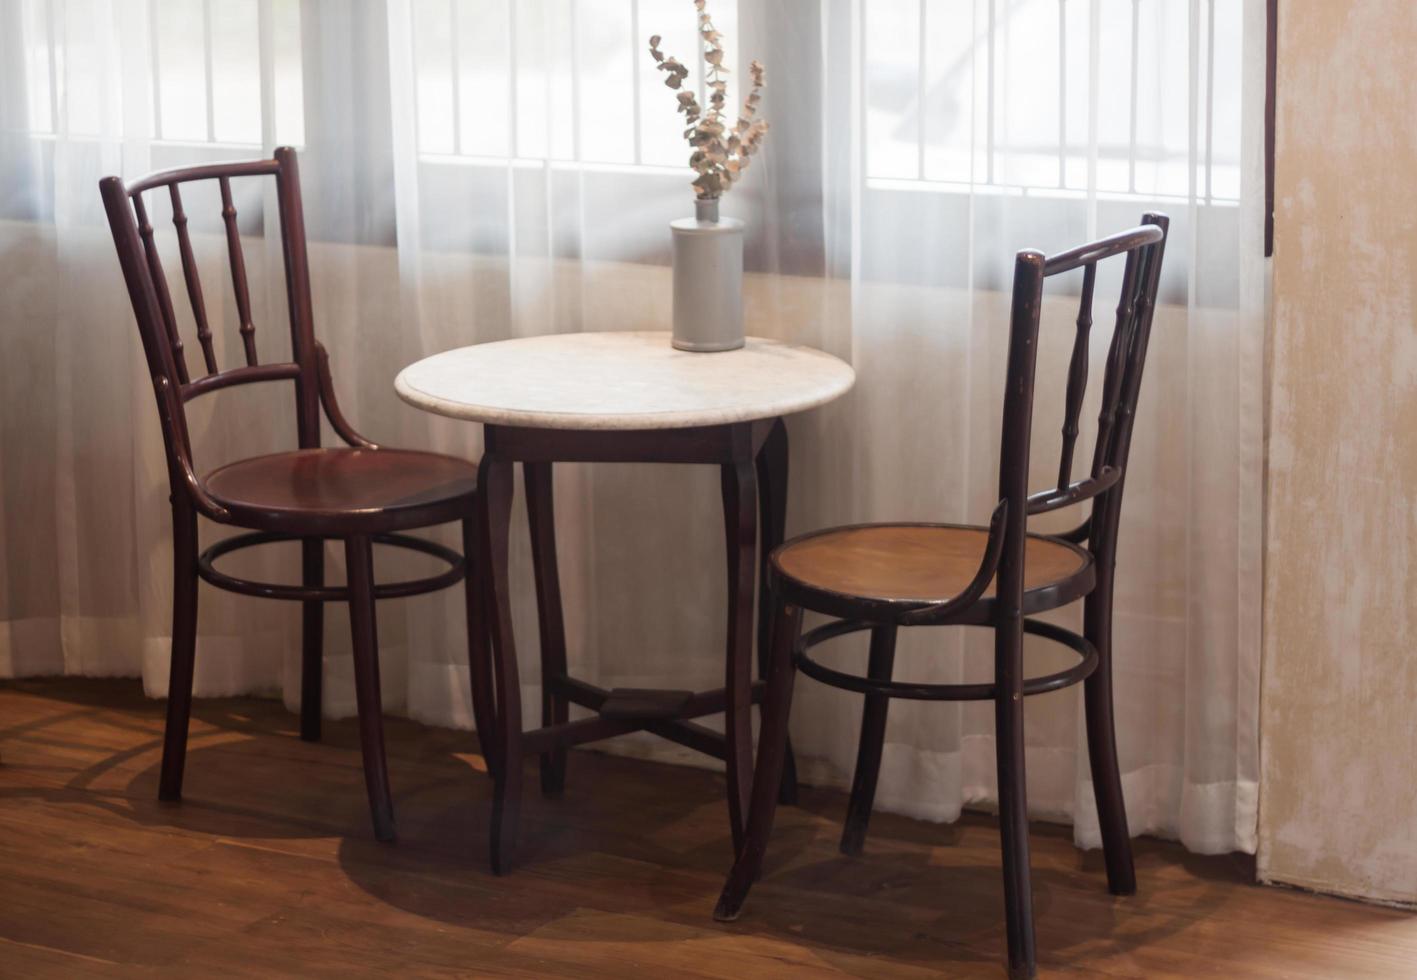 Tisch und Stühle in einem Café foto